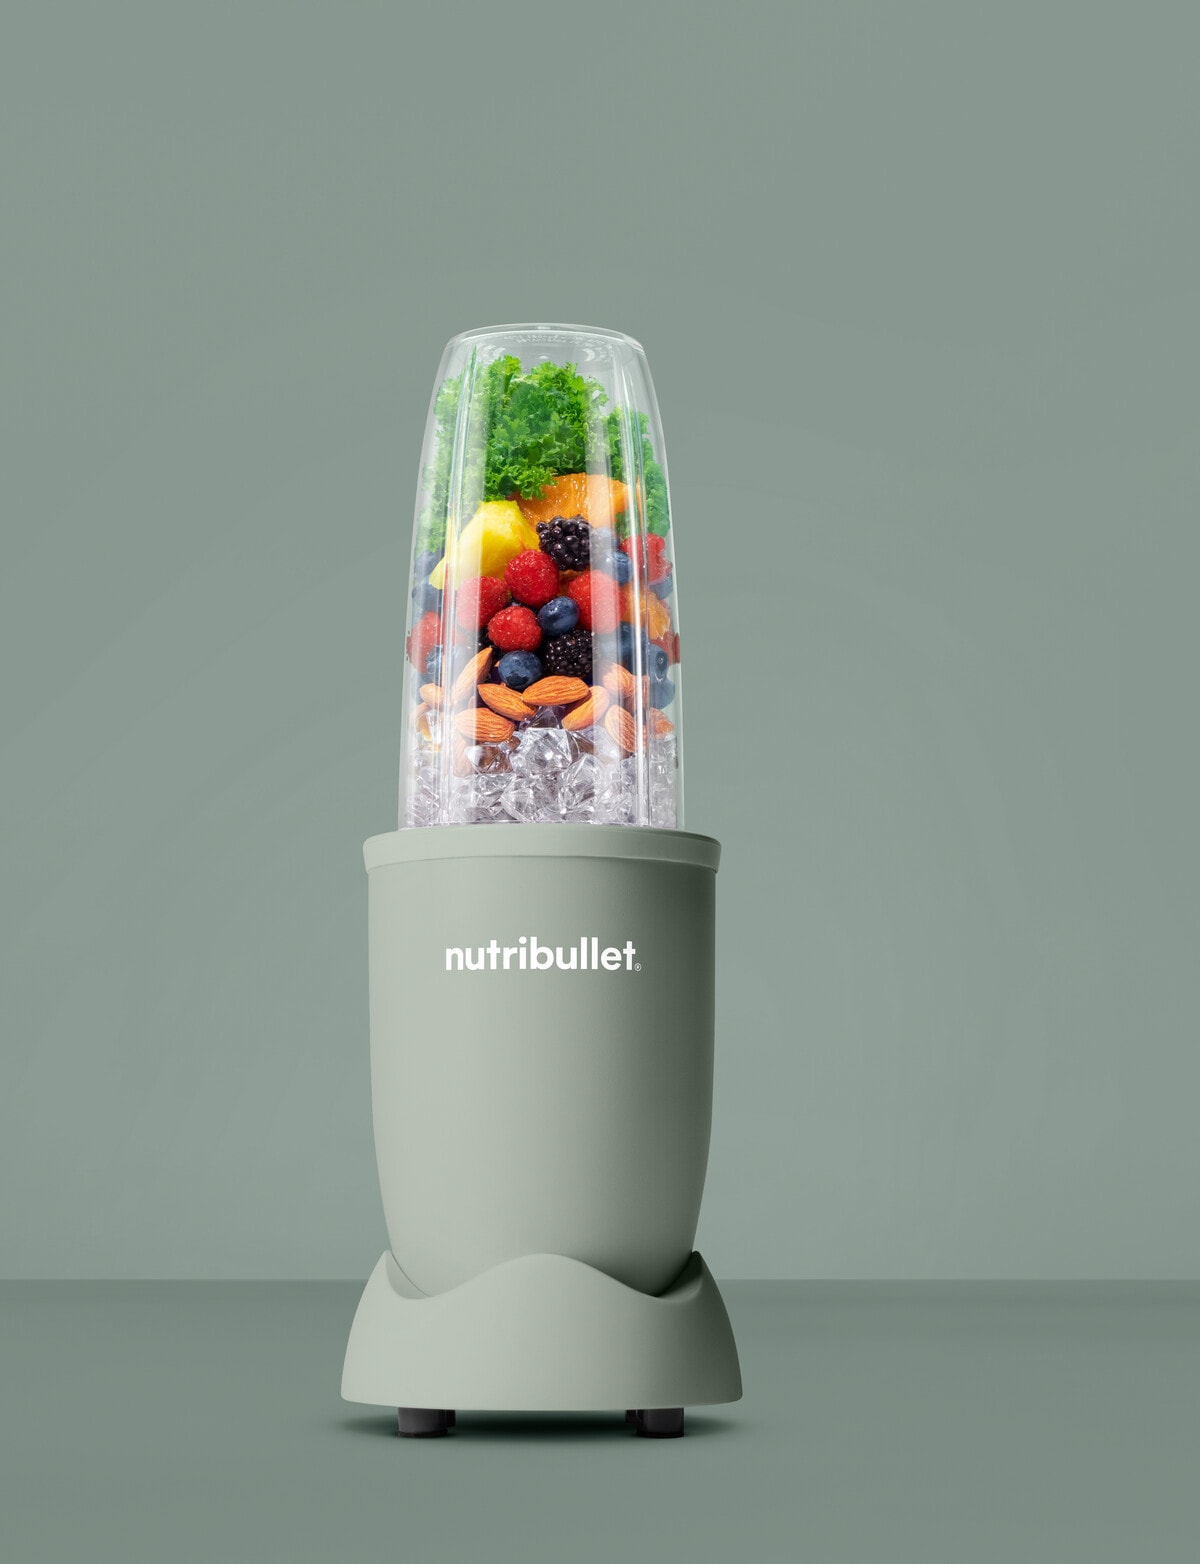 NutriBullet Portable Blender - NutriBullet New Zealand